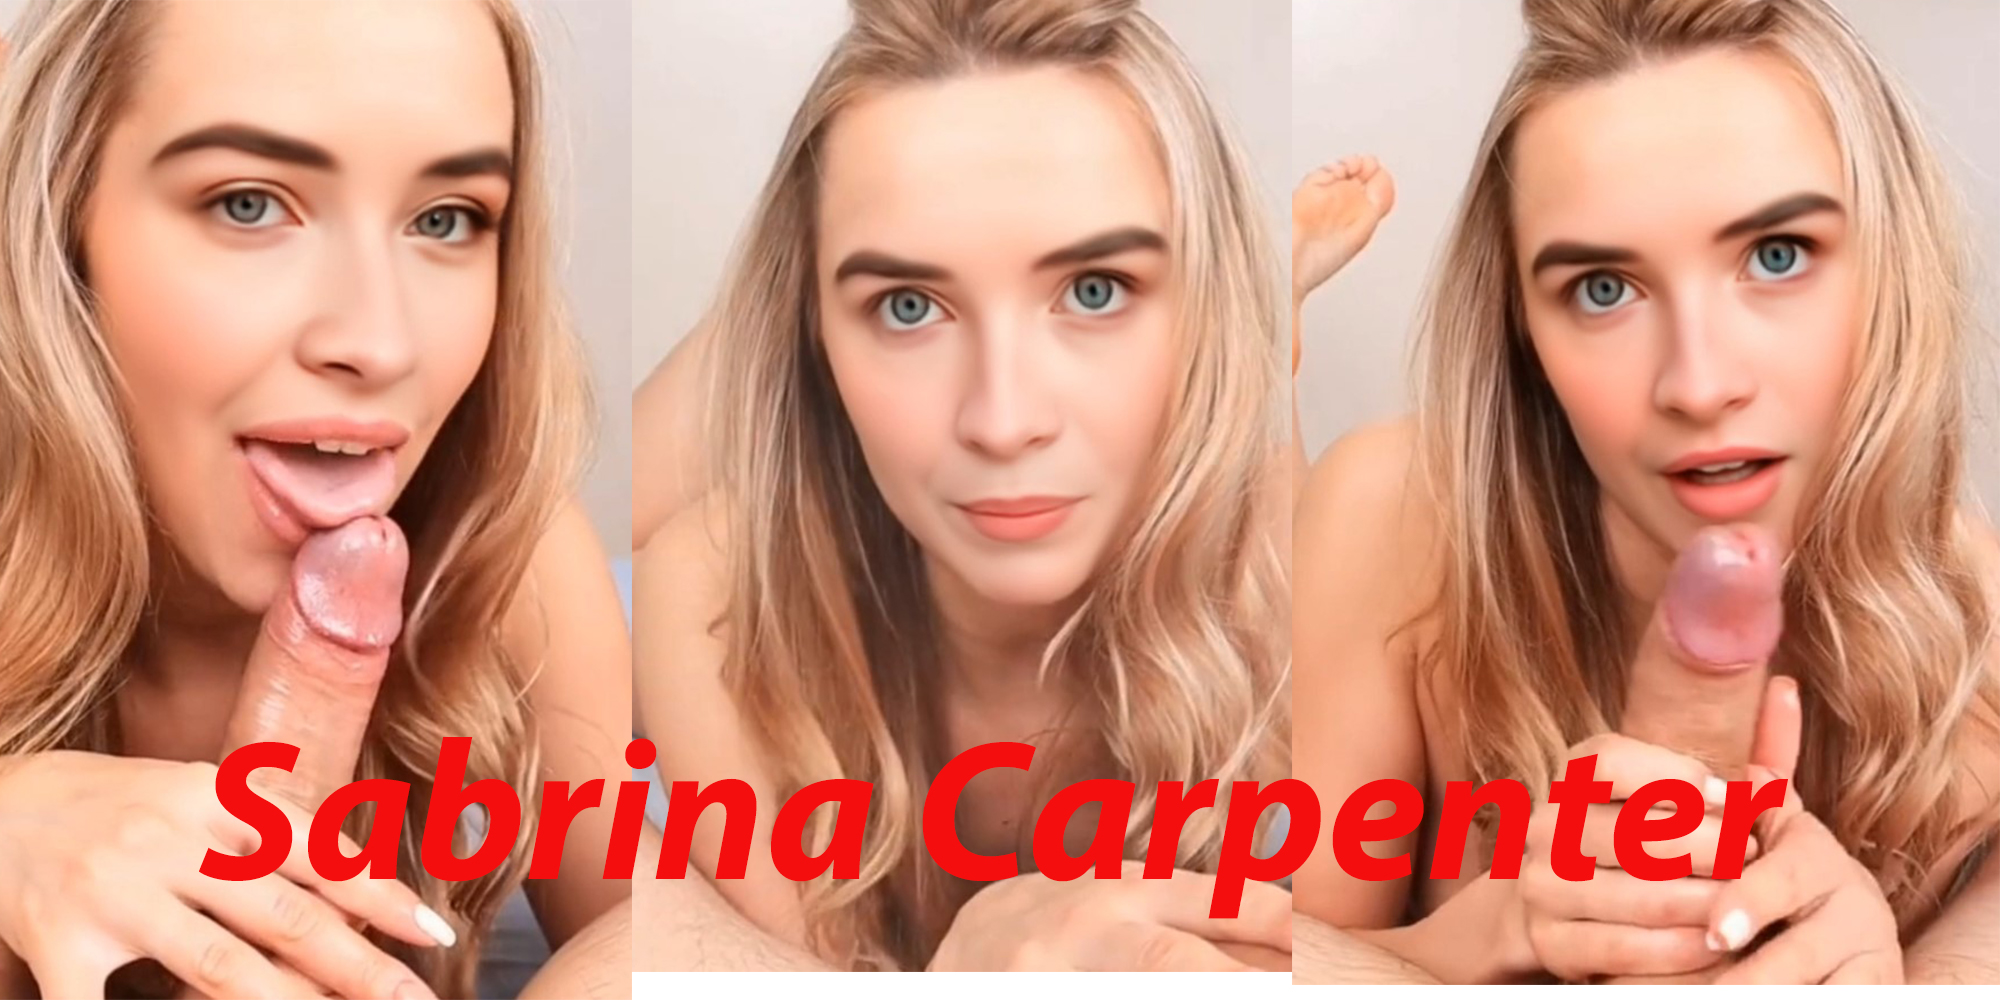 Sabrina Carpenter amazing teasing and blowjob